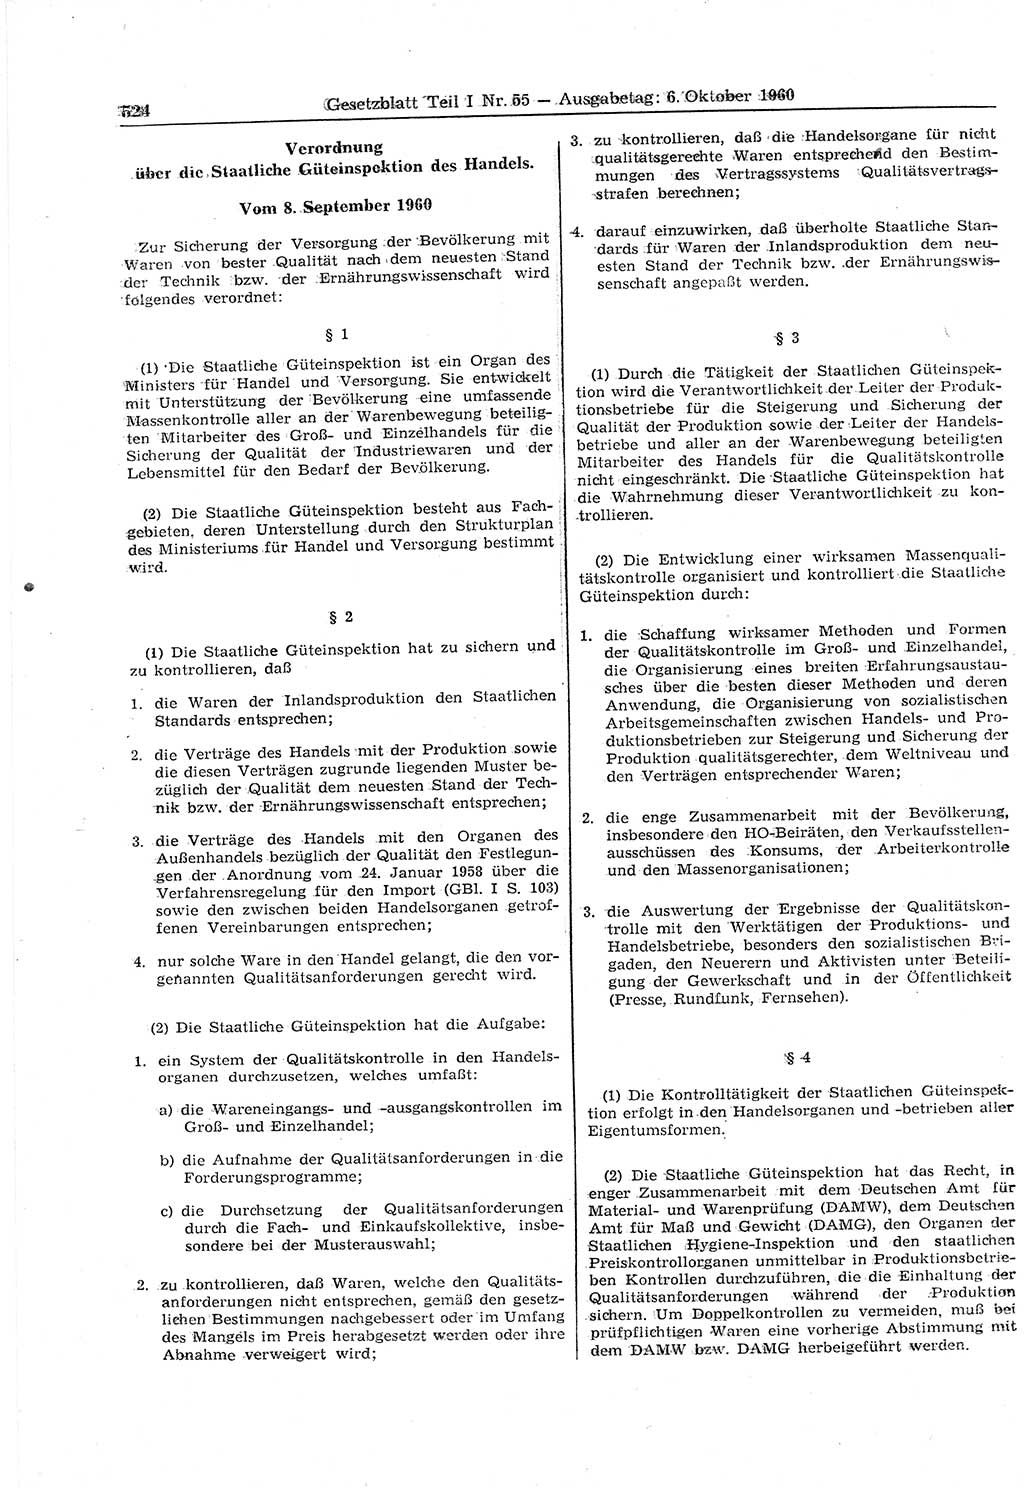 Gesetzblatt (GBl.) der Deutschen Demokratischen Republik (DDR) Teil Ⅰ 1960, Seite 524 (GBl. DDR Ⅰ 1960, S. 524)